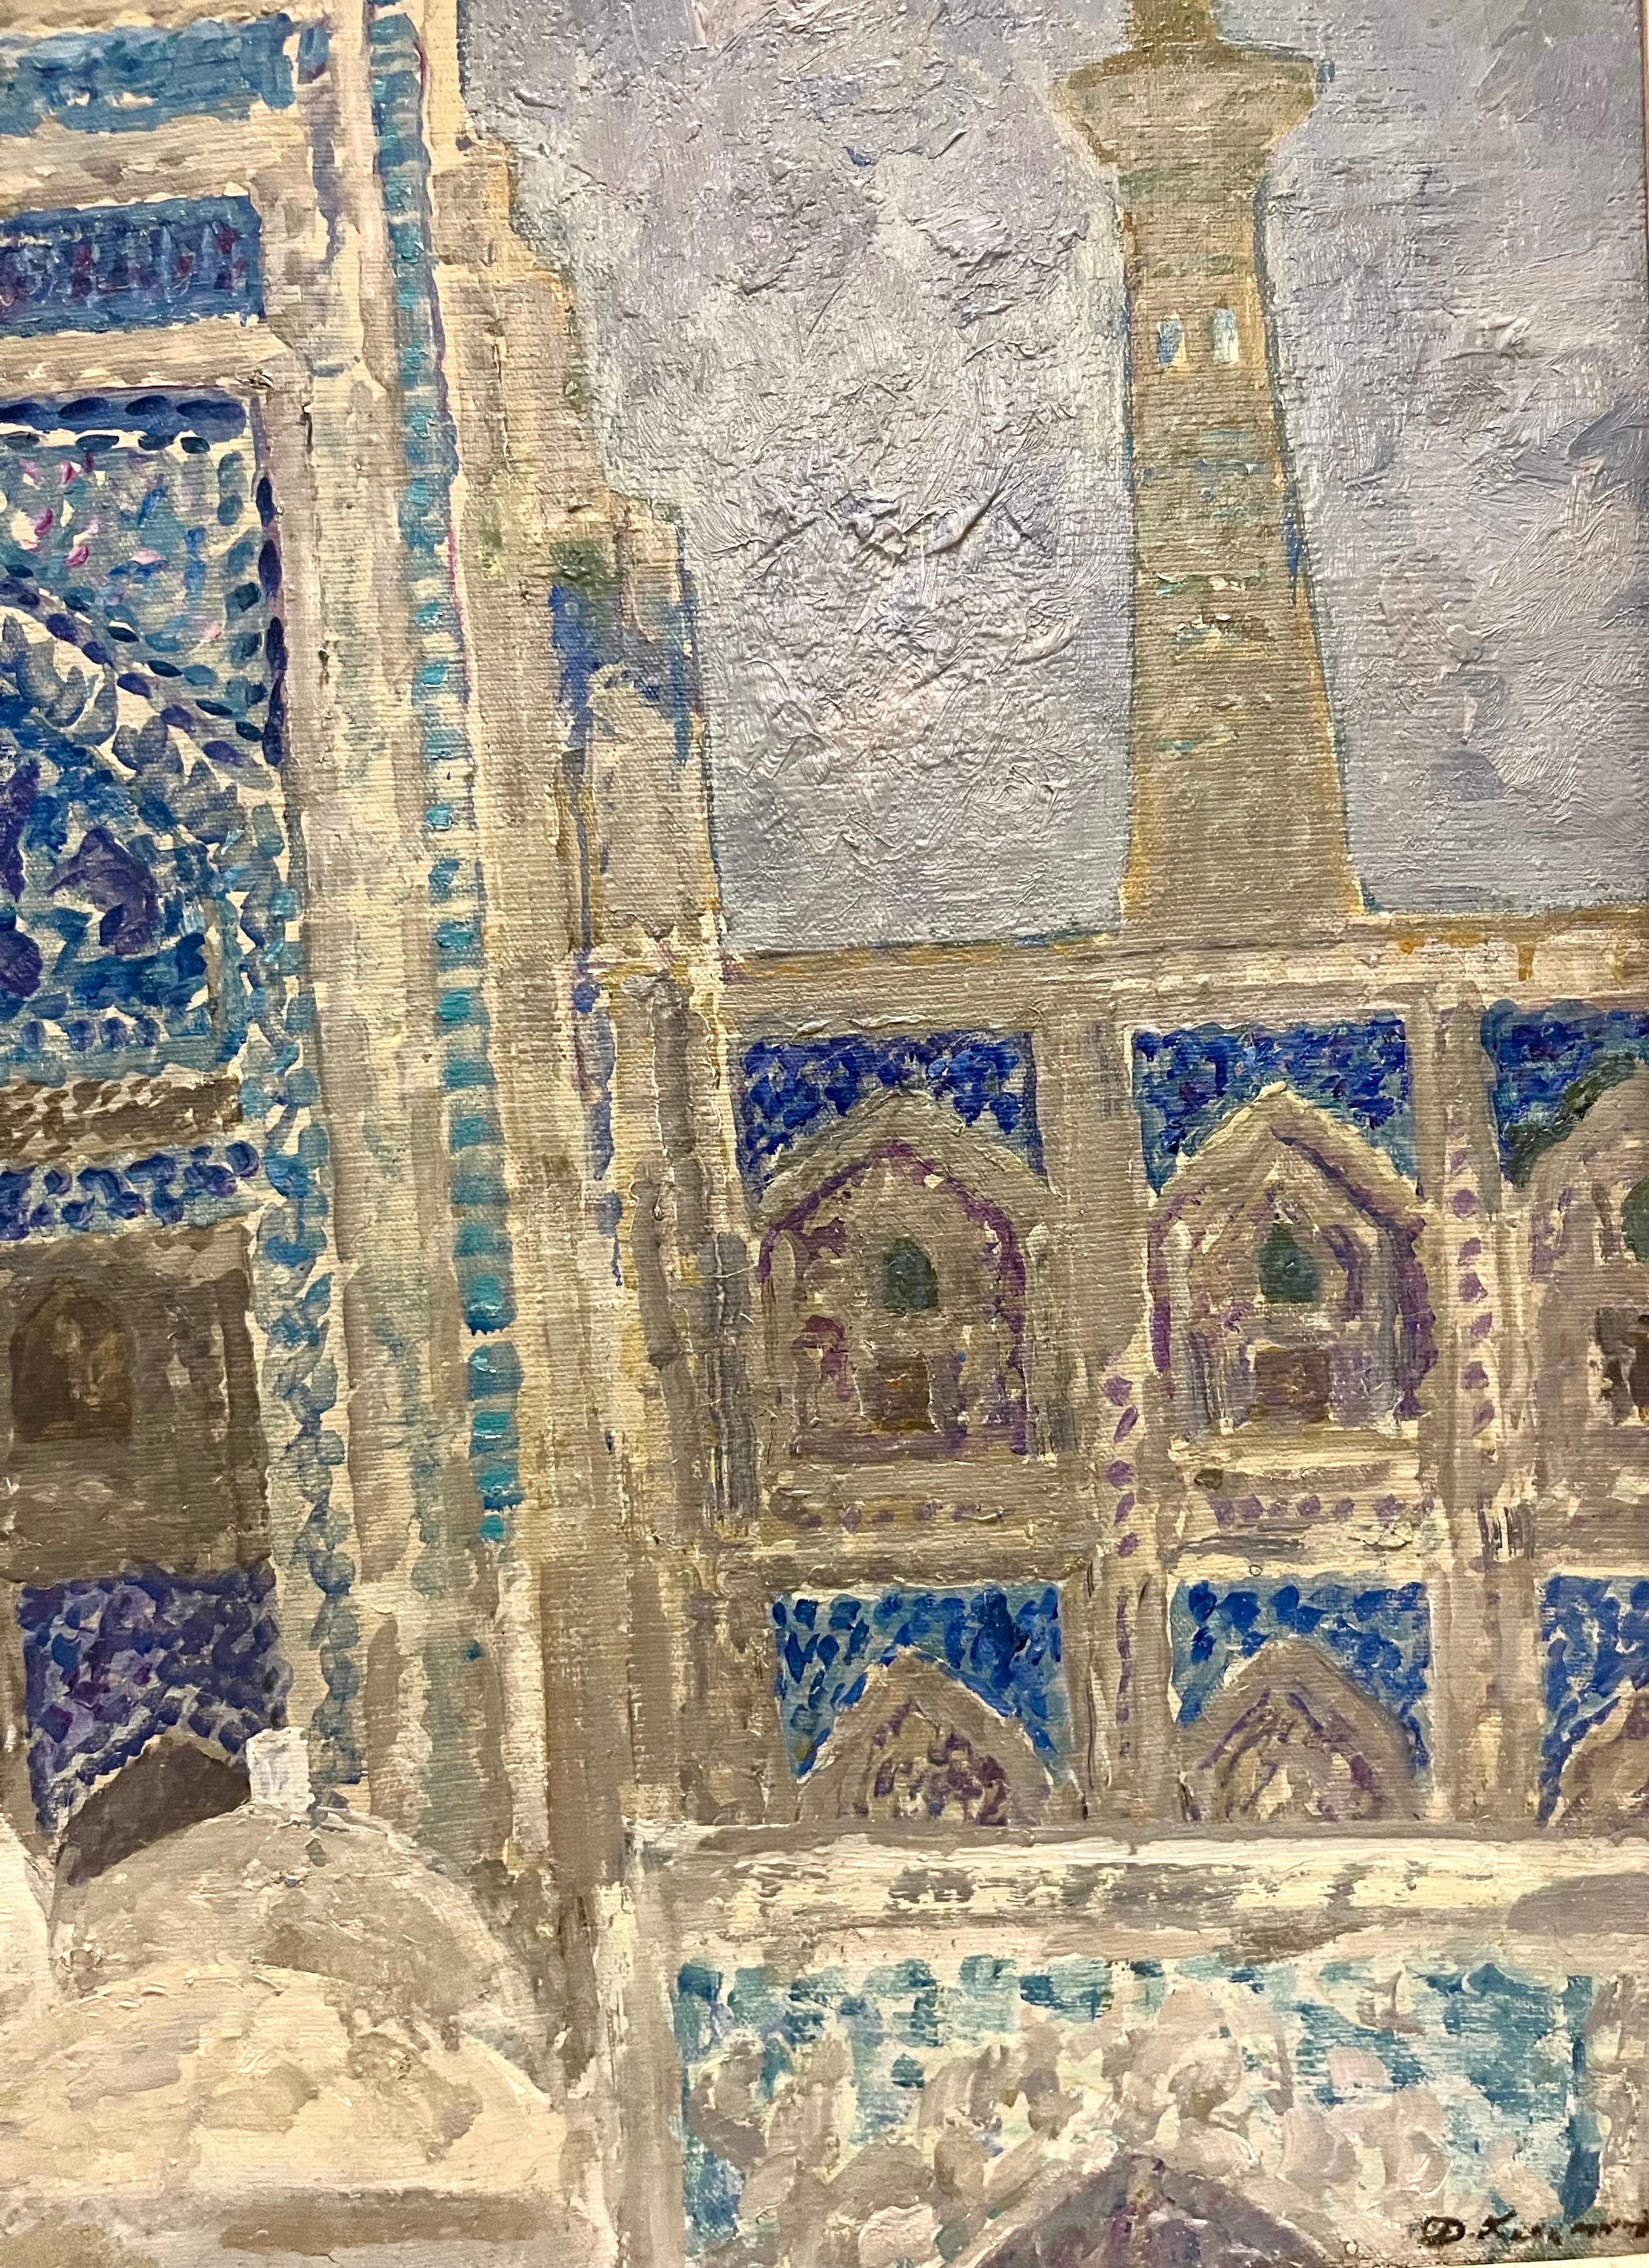 Negli anni 70 dello scorso secolo quando l'Uzbekistan faceva parte del Unione Sovietica,Kosmin viaggio molto in queste terre verso oriente
Rimase affascinato dai colori e dalle architetture delle Moschee e delle Madrasse di Samarcanda ,Khiva,